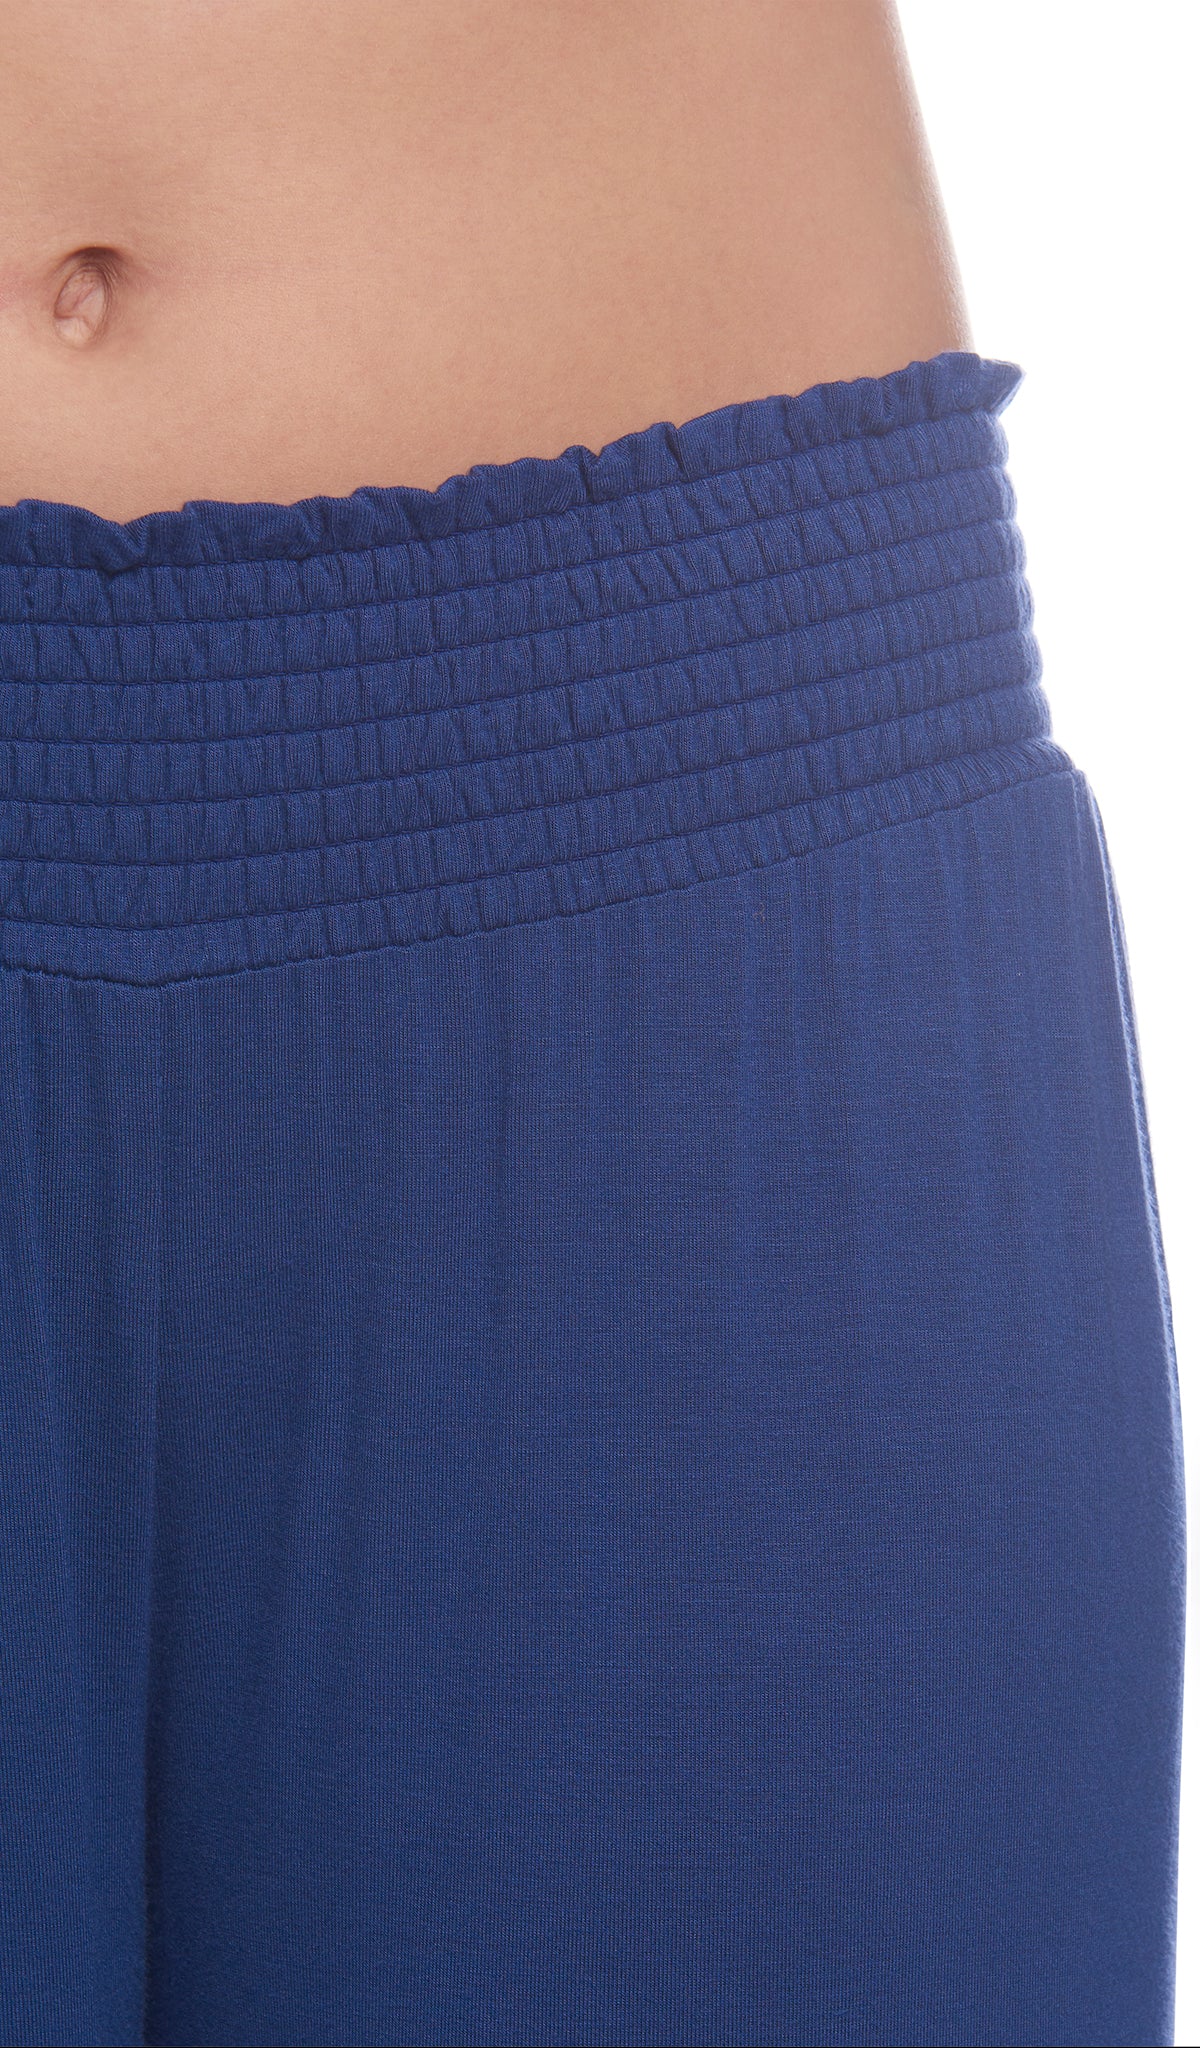 Denim Blue Analise 3-Piece Set, detailed shot of smocked elastic waistband.